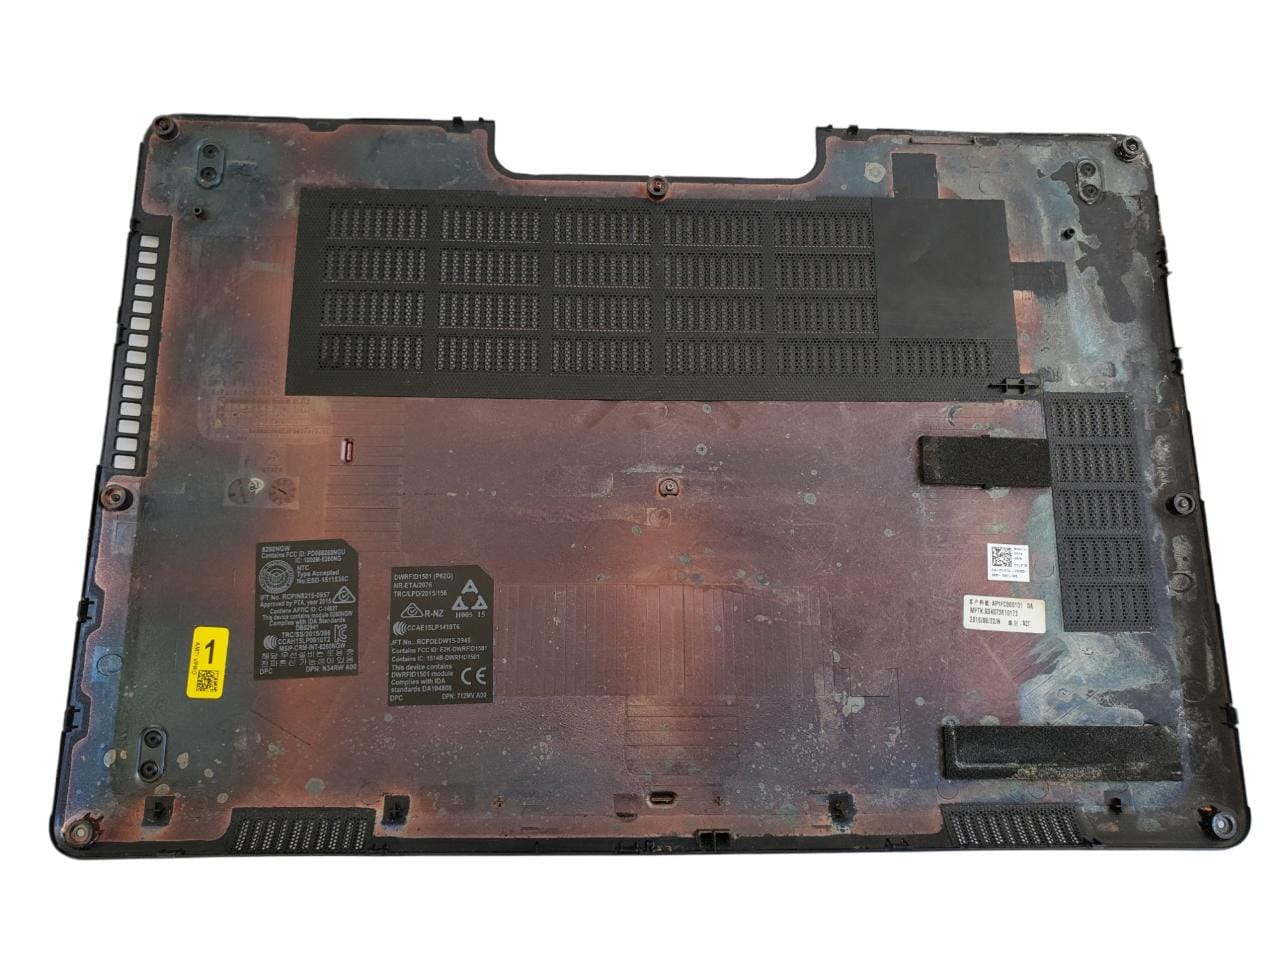 Tapa trasera, Altavoces y Disipador con ventilador de Laptop Dell Latitude E5470 (Producto usado)